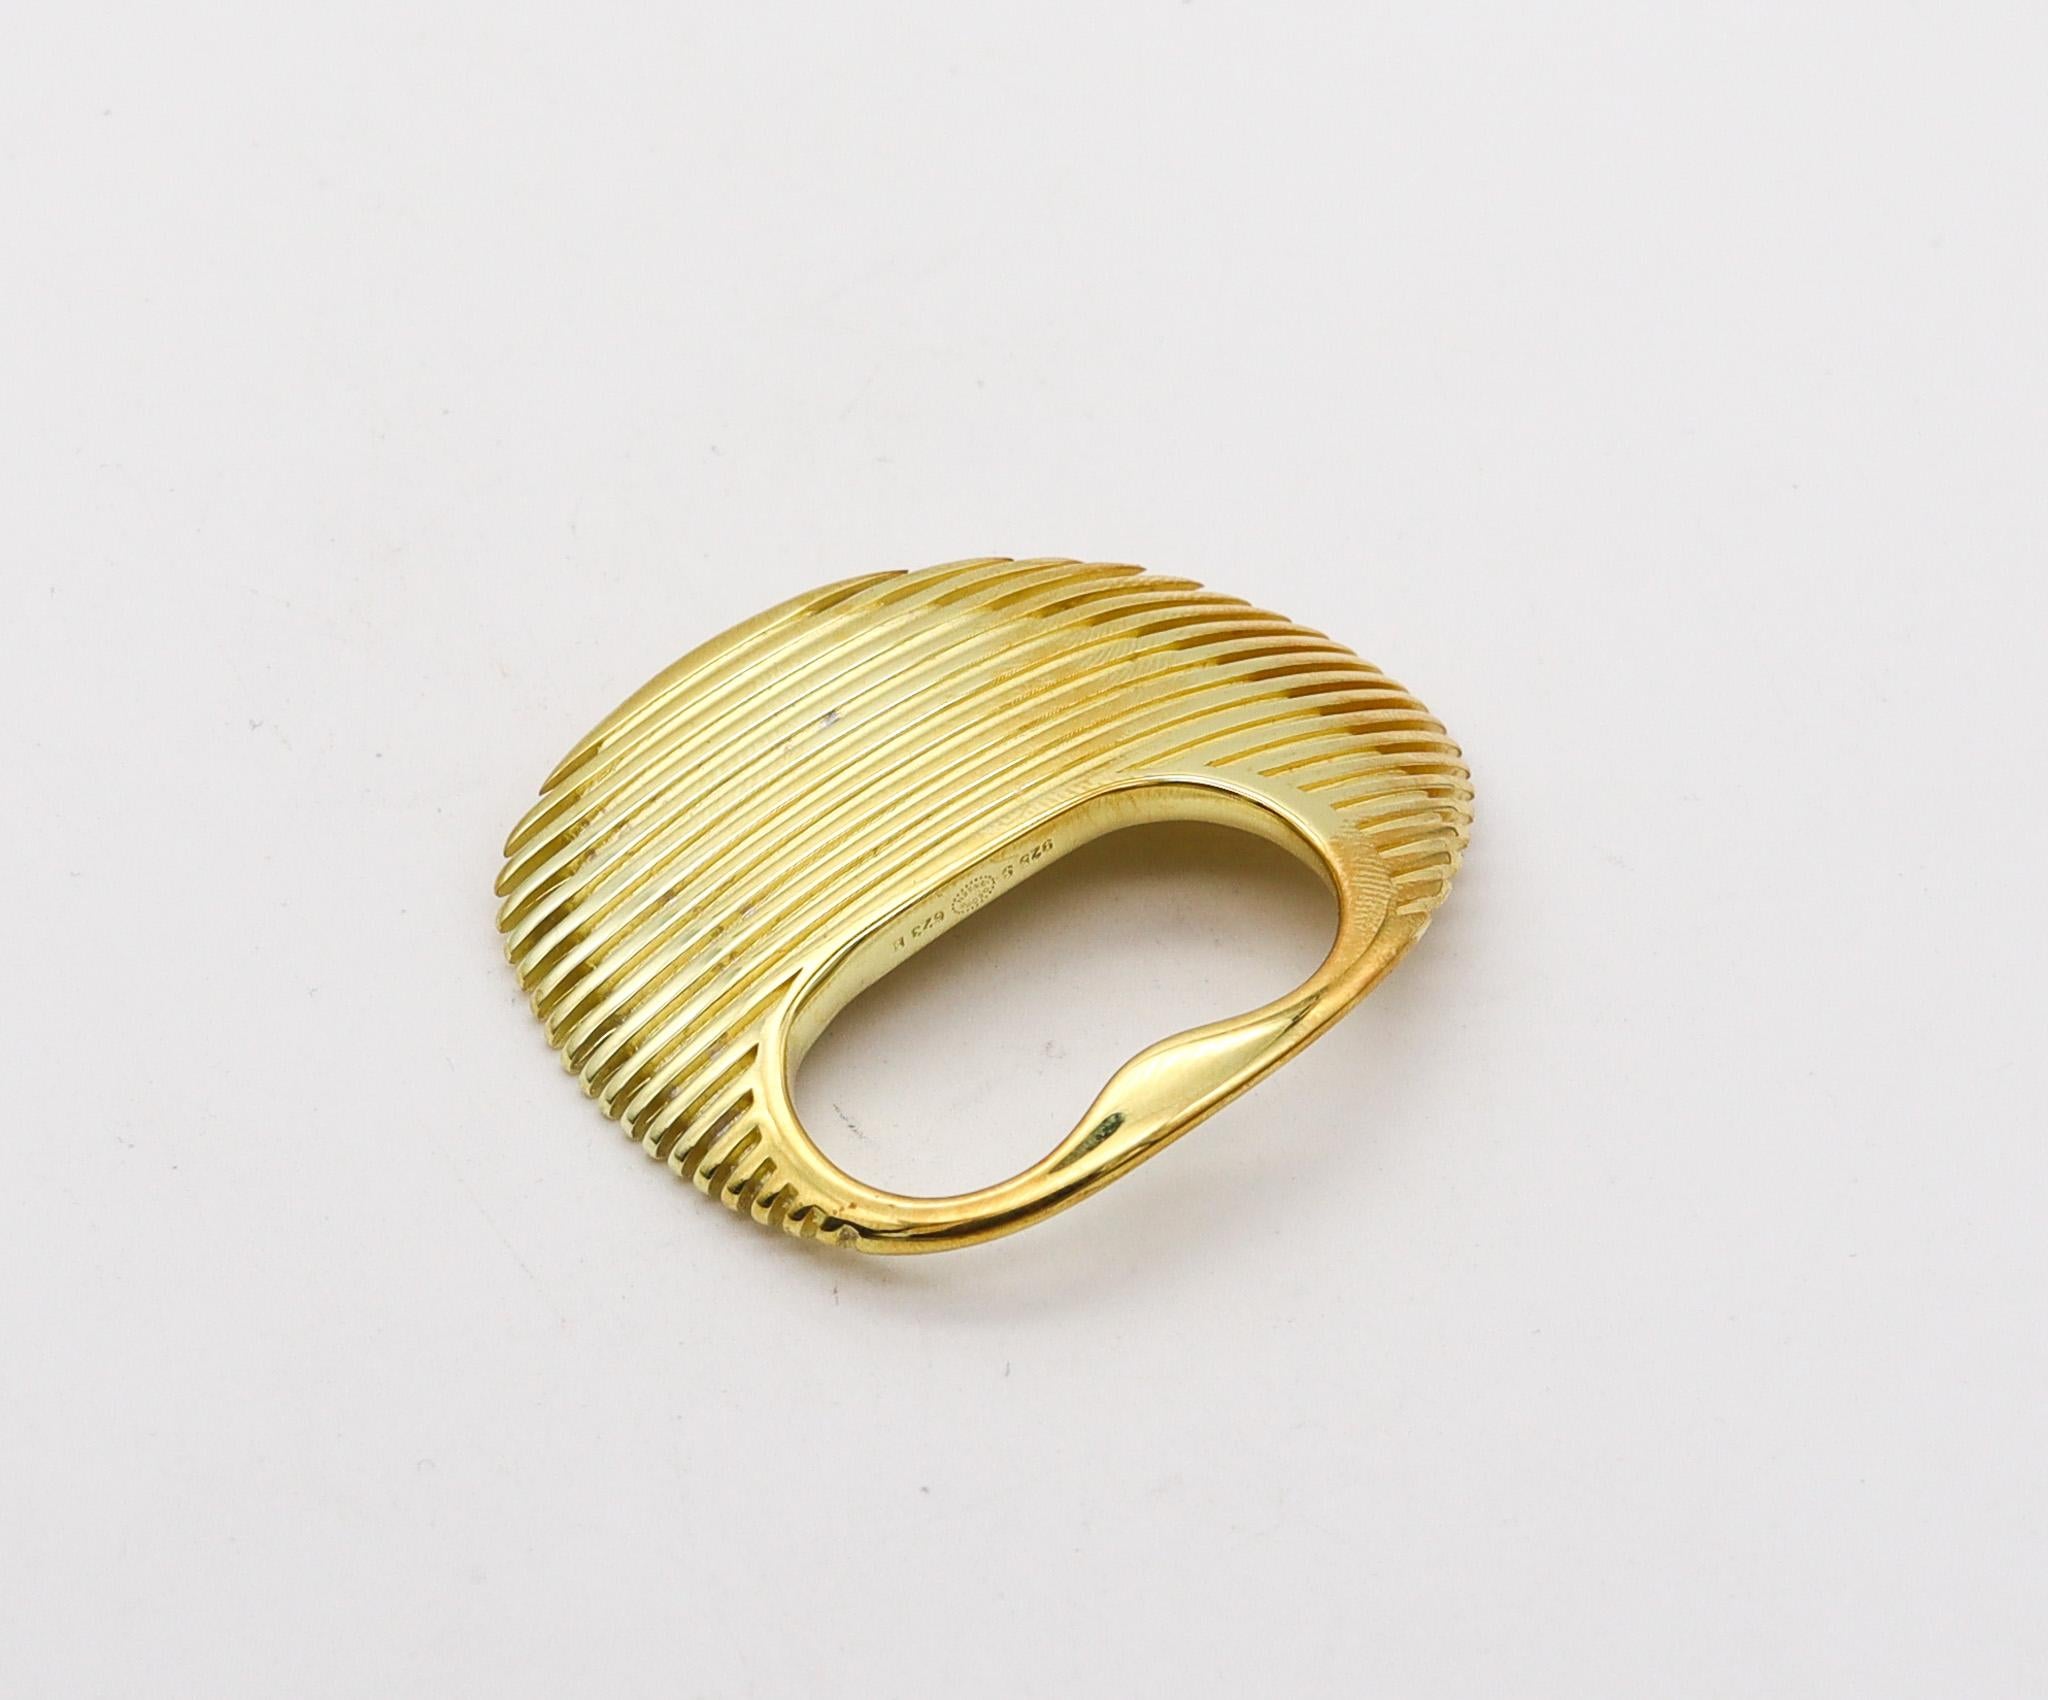 Ring Lamellae, entworfen von Zaha Hadid (1950-2016) für Georg Jensen.

Dieser skulpturale Ring mit zwei Fingern ist Teil der Lamellae-Kollektion, die von der berühmten, im Irak geborenen britischen Architektin Zaha Hadid exklusiv für Georg Jensen